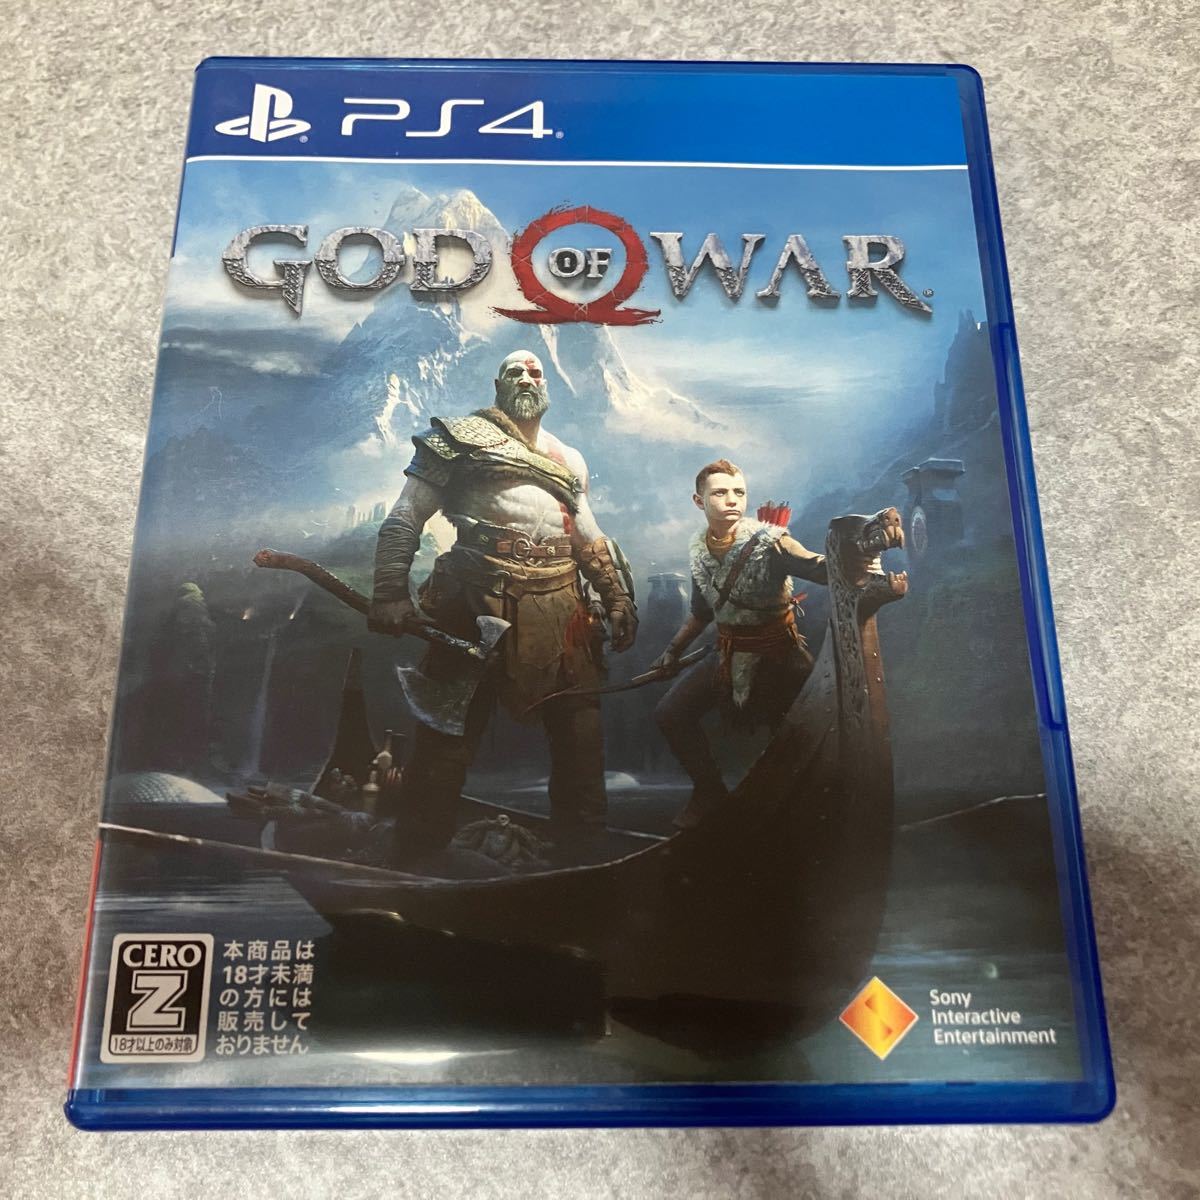 ゴッド・オブ・ウォー PS4 GOD OF WAR